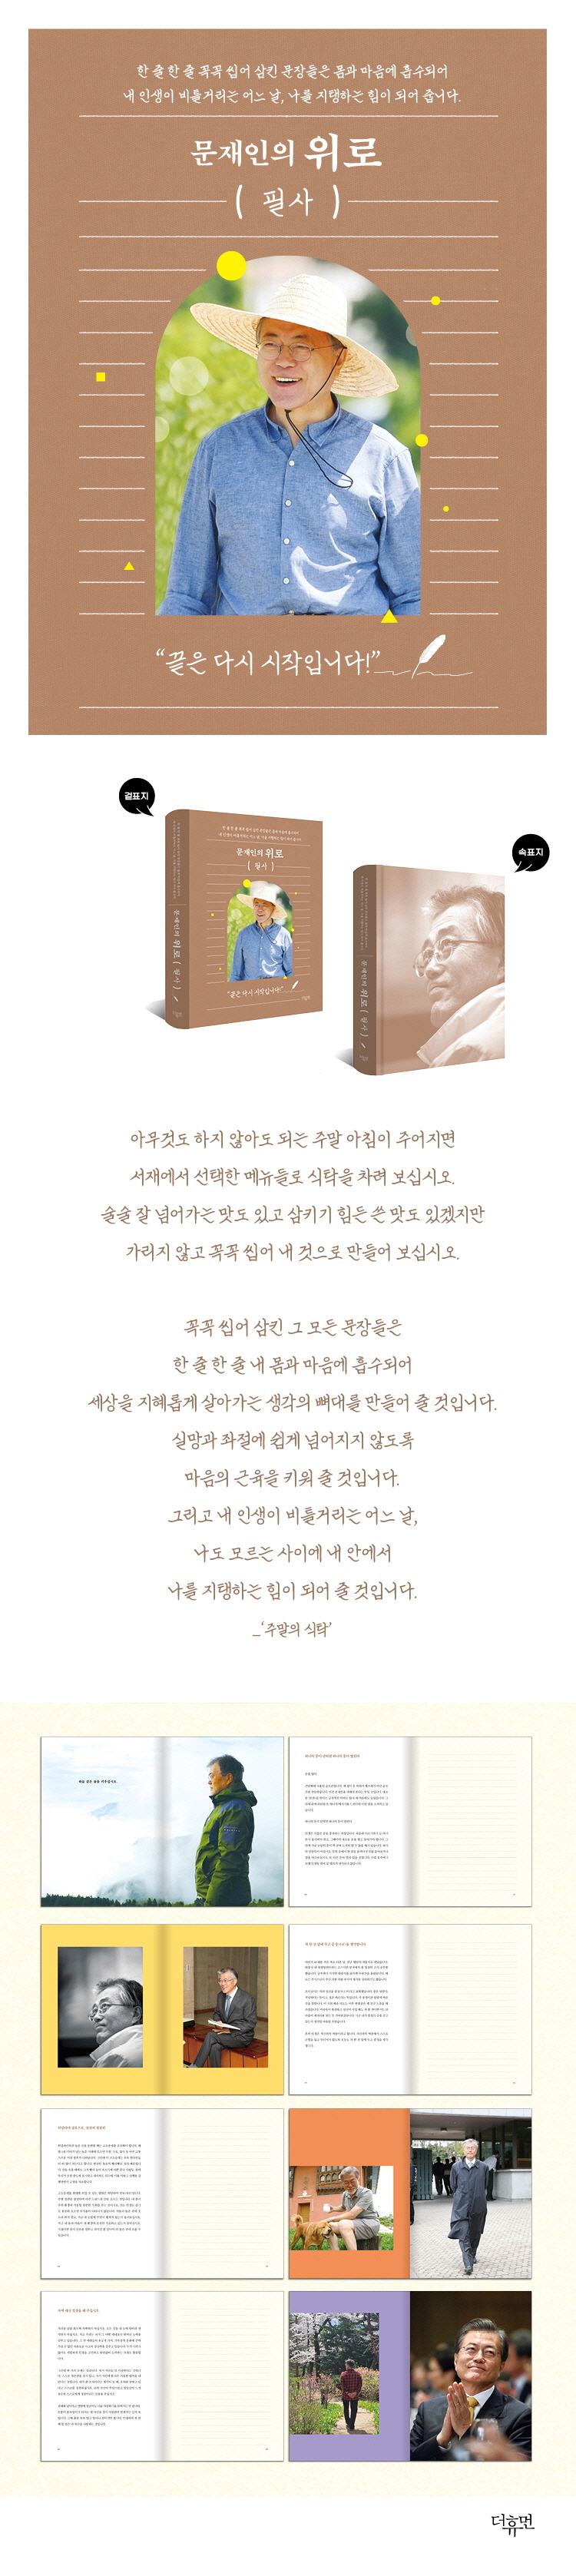 문재인의 위로 필사(양장본 Hardcover) 도서 상세이미지